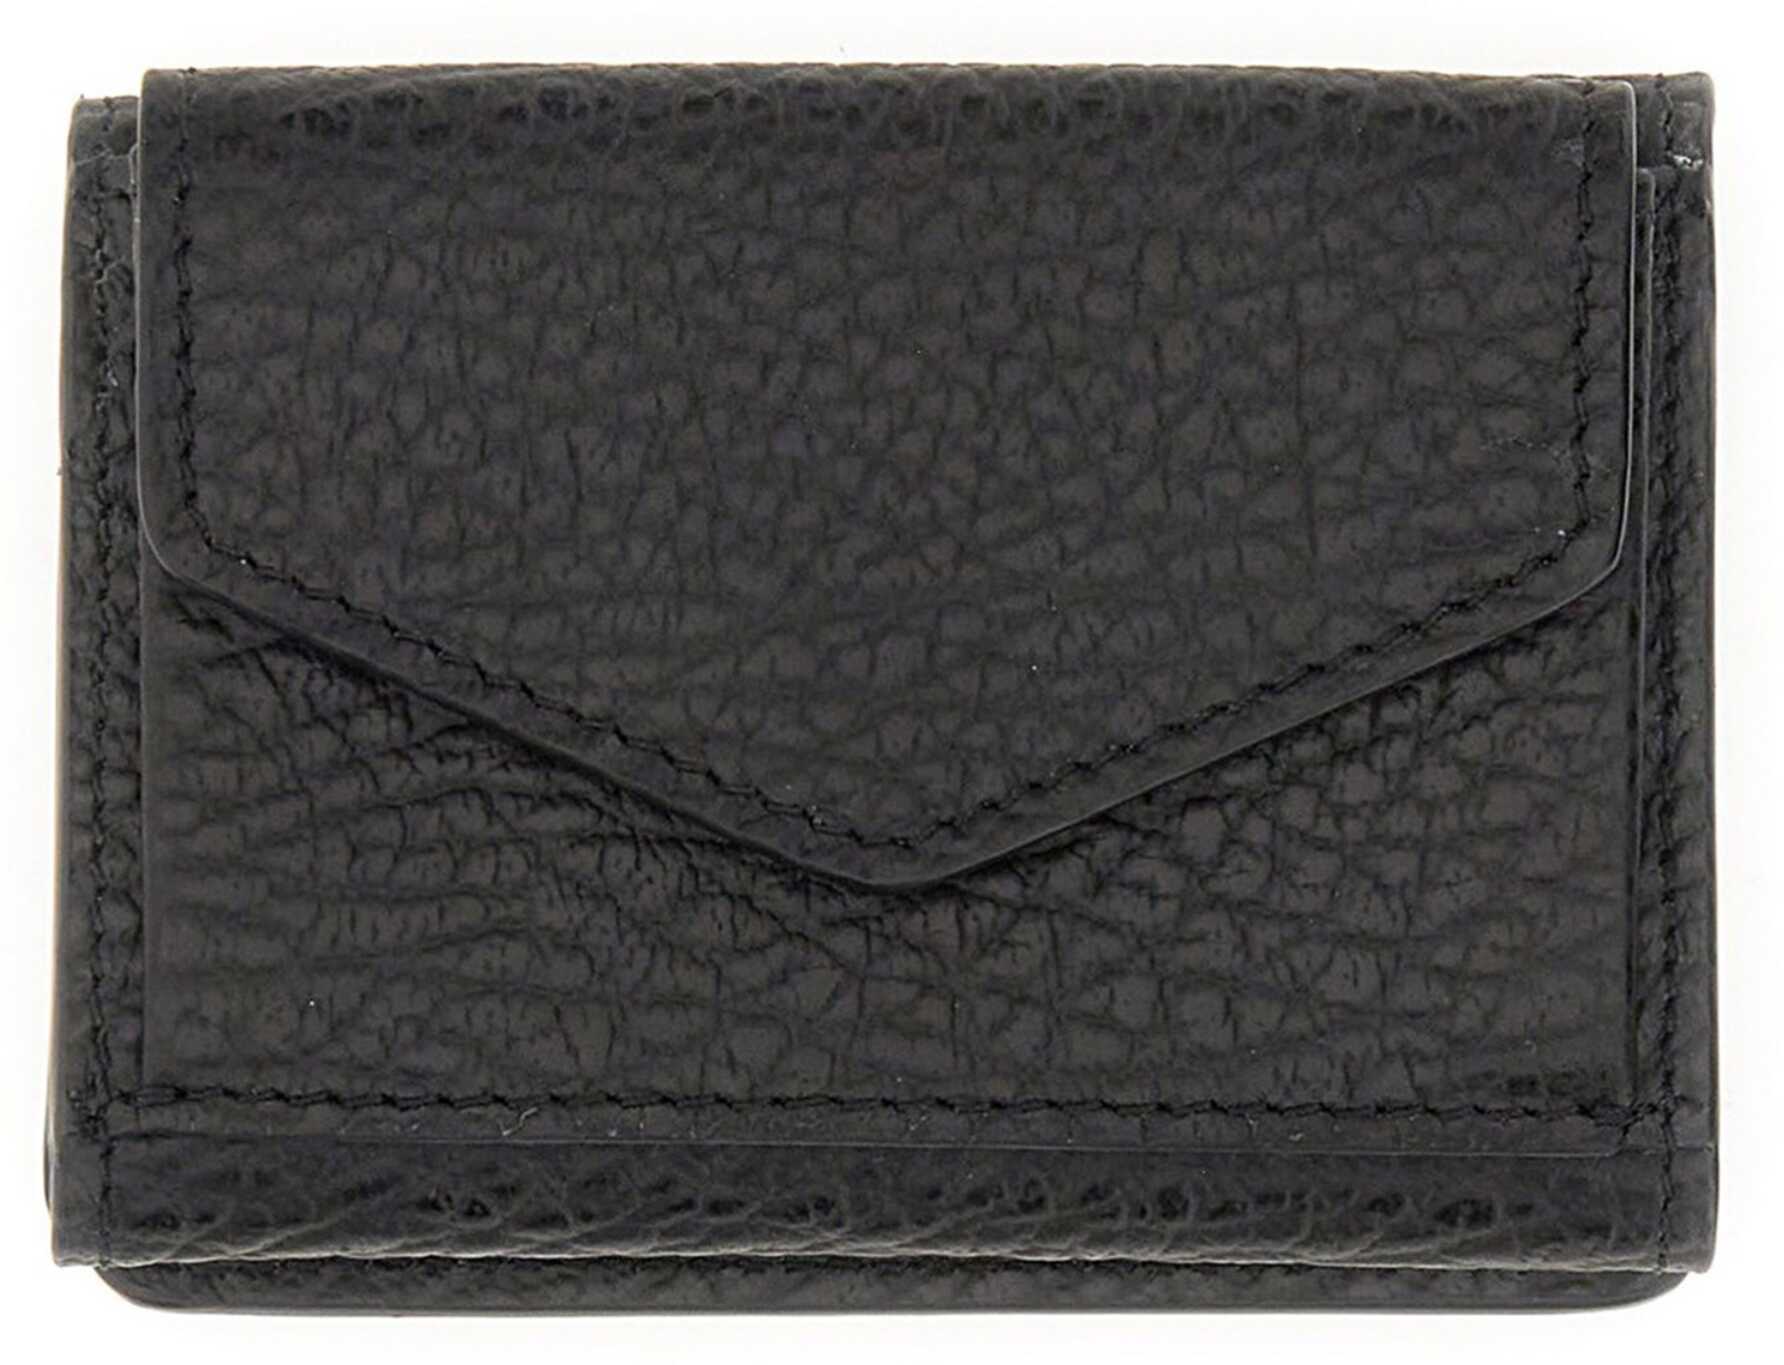 Maison Margiela Four Stitches Compact Wallet BLACK